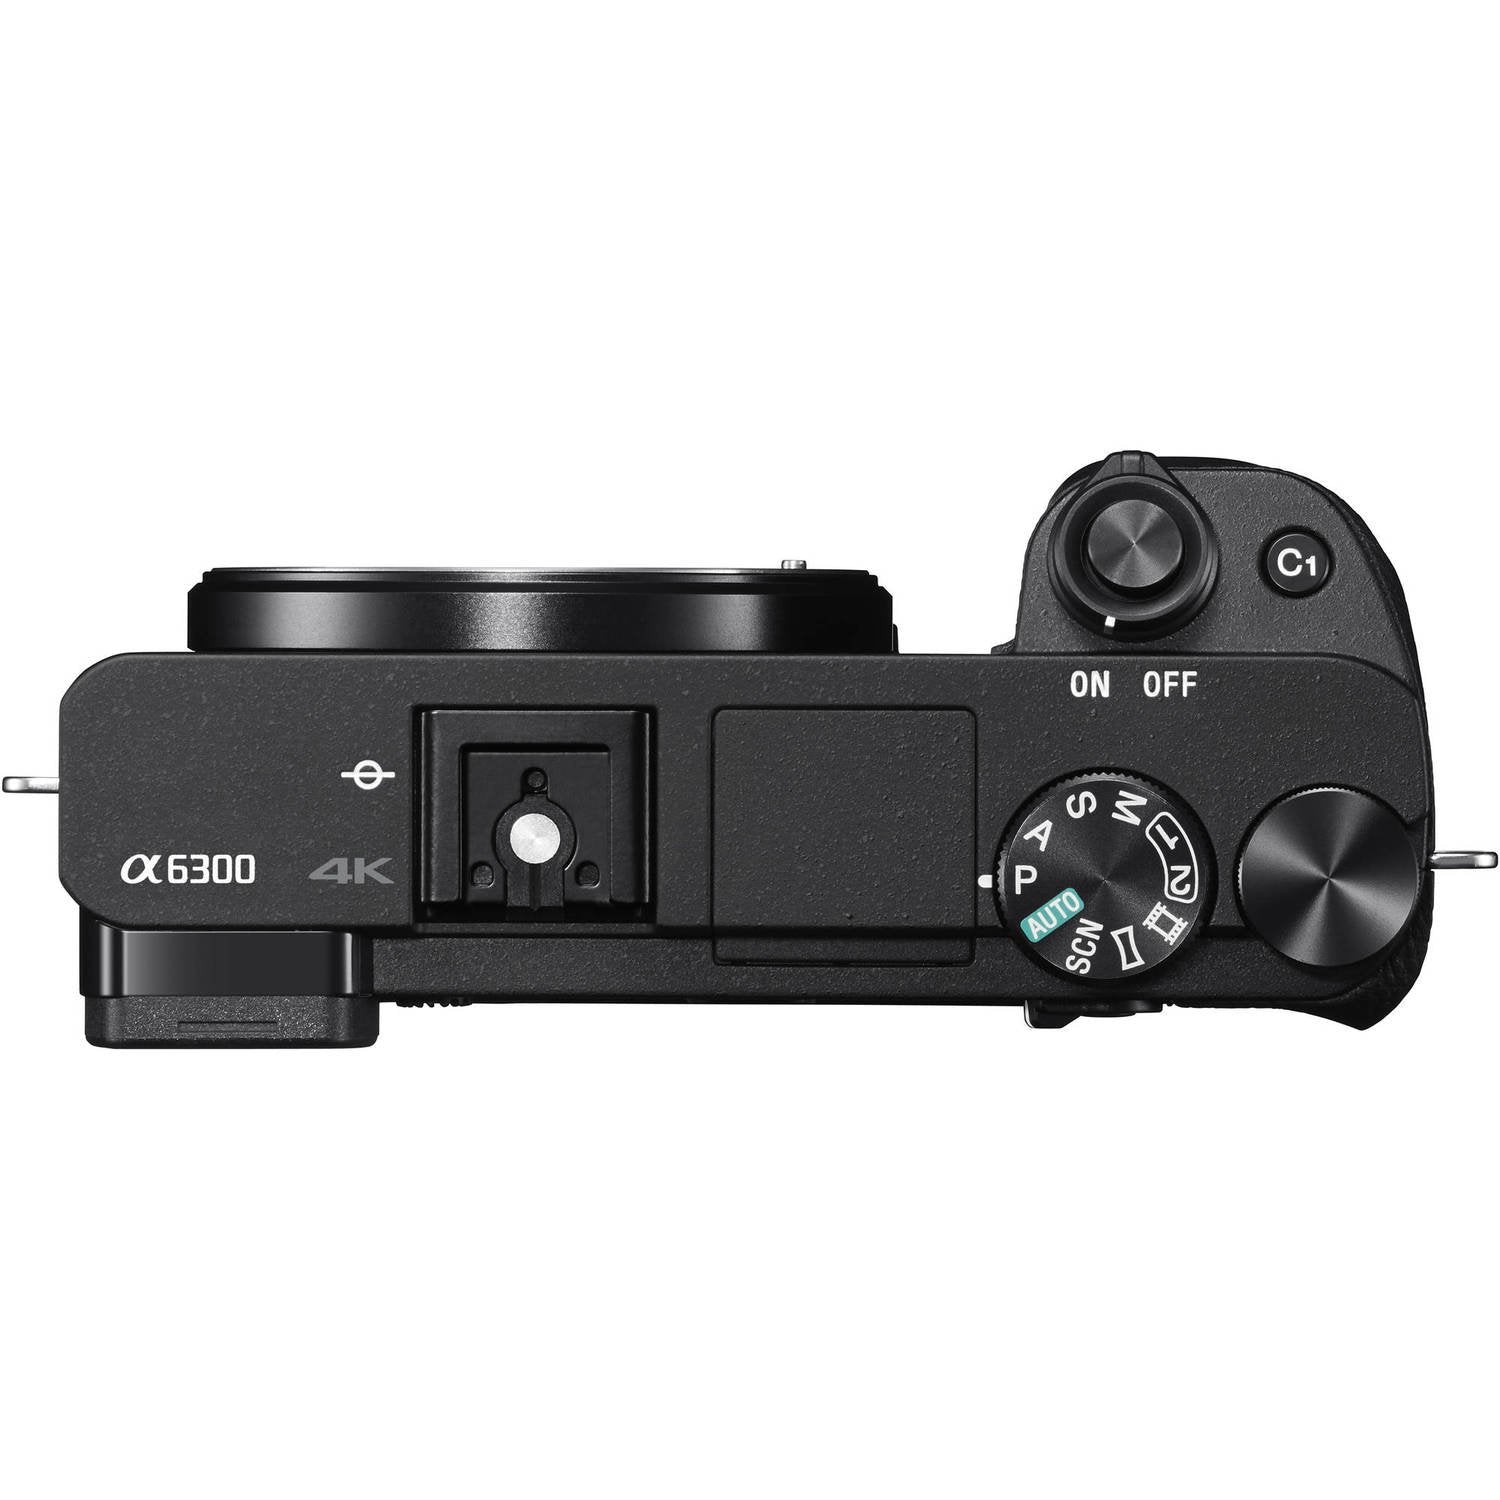 Sony Alpha a6300 Mirrorless Digital Camera (International Model) Vario-Tessar T FE 24-70mm f/4 ZA OSS Lens + NP-FW50 Rep